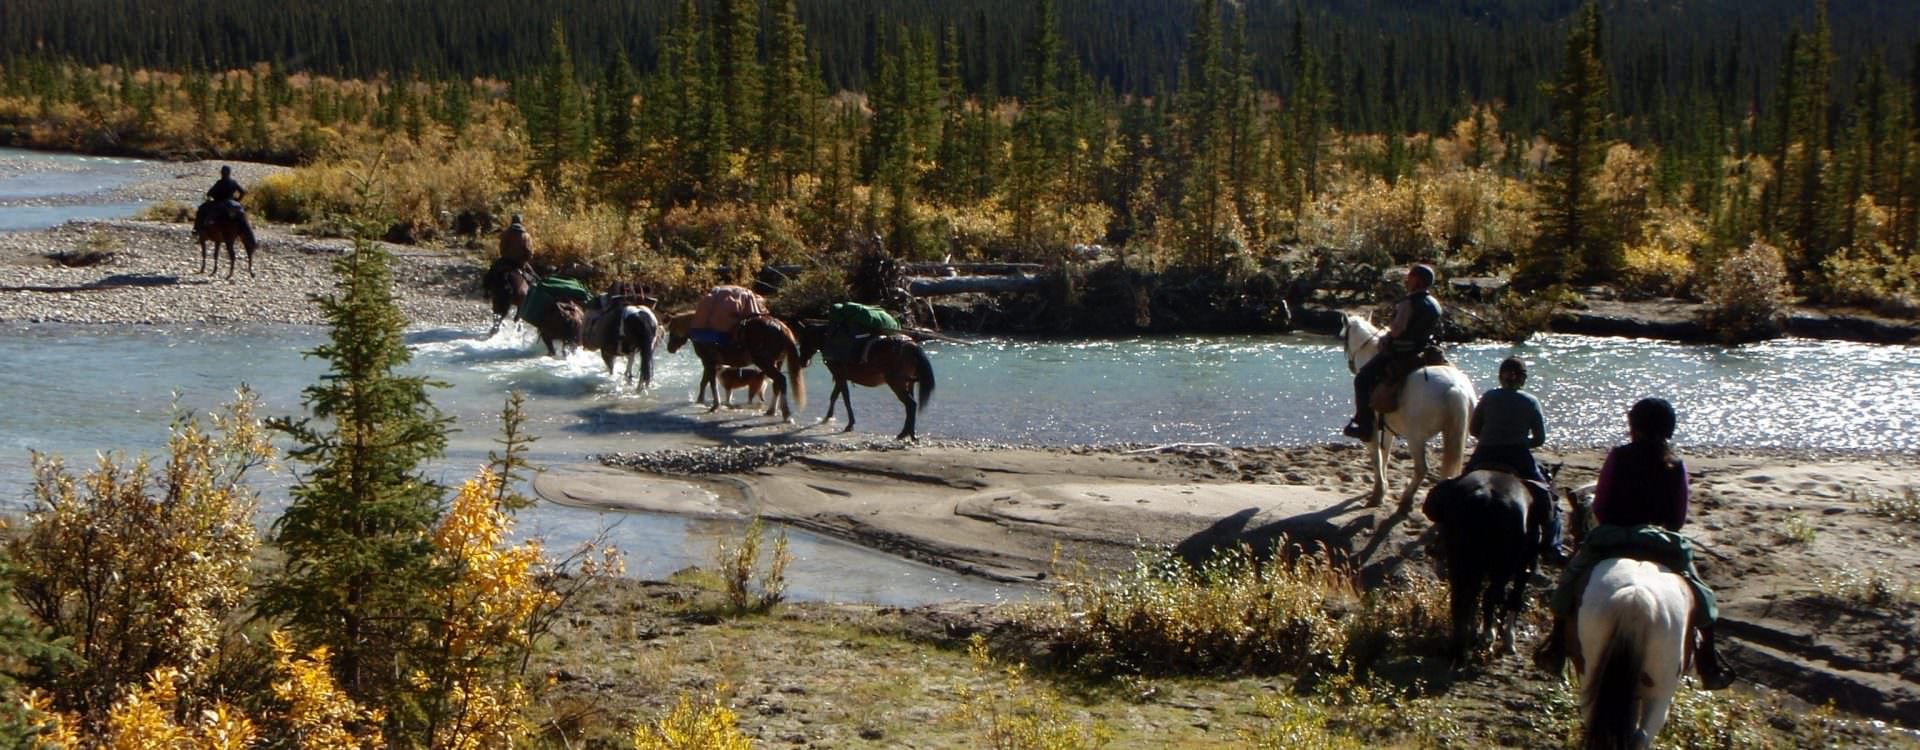 Te paard door de wildernis in Canada - Vakantie te paard / Reisbureau Perlan